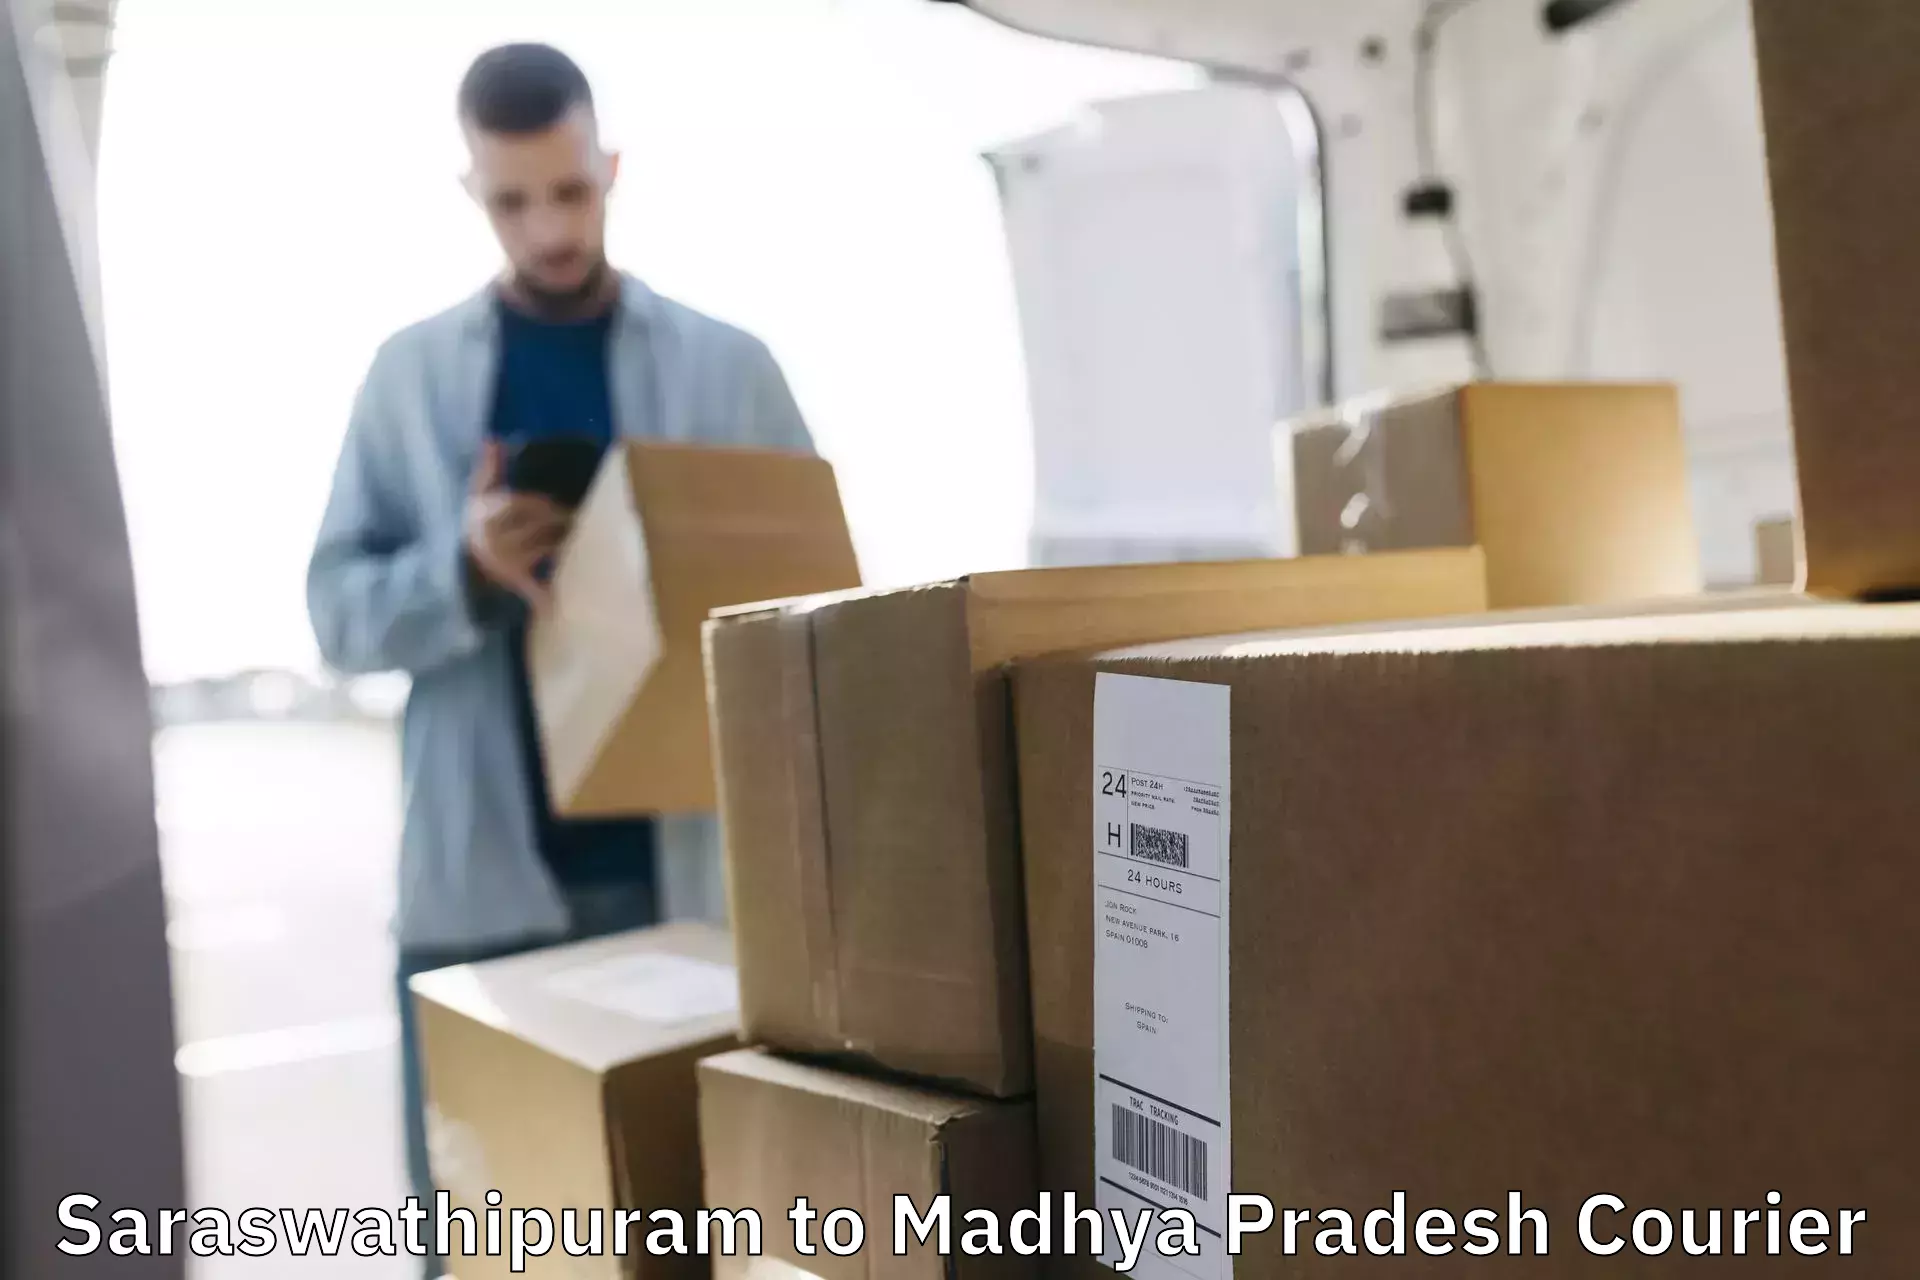 Full-service courier options Saraswathipuram to Madhya Pradesh